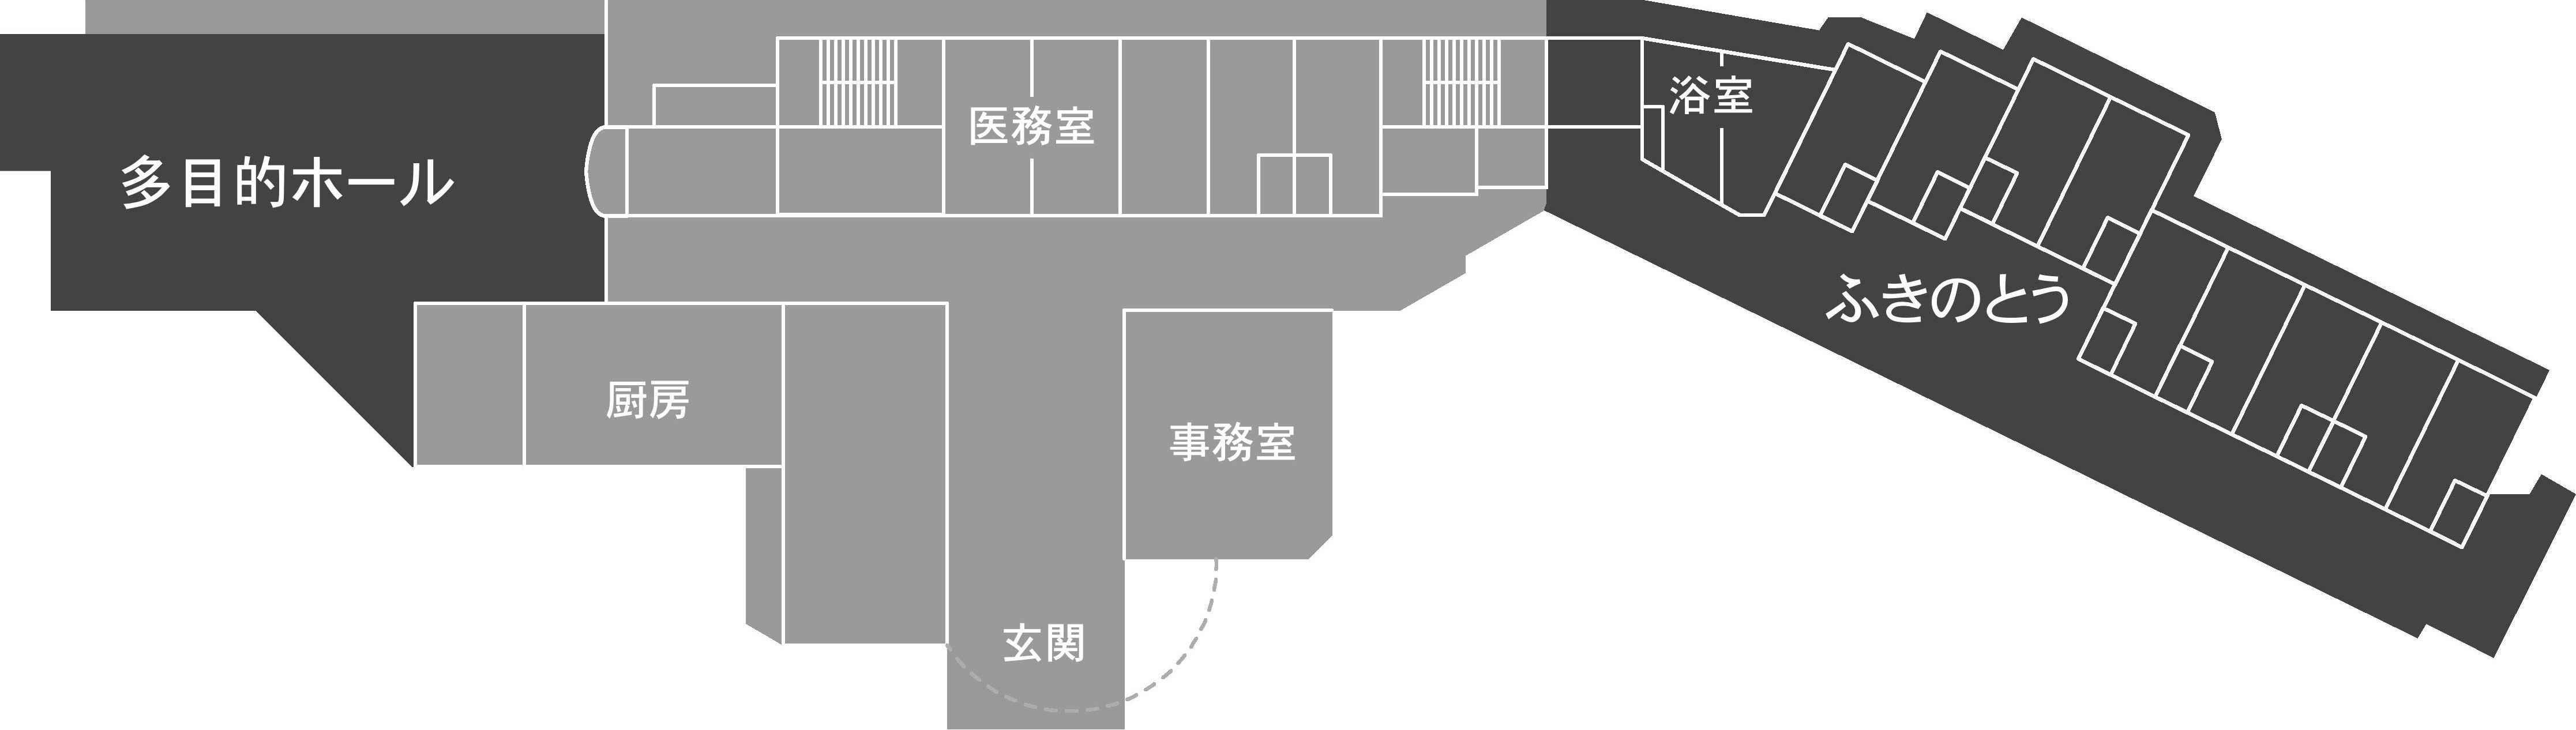 1階のフロア図